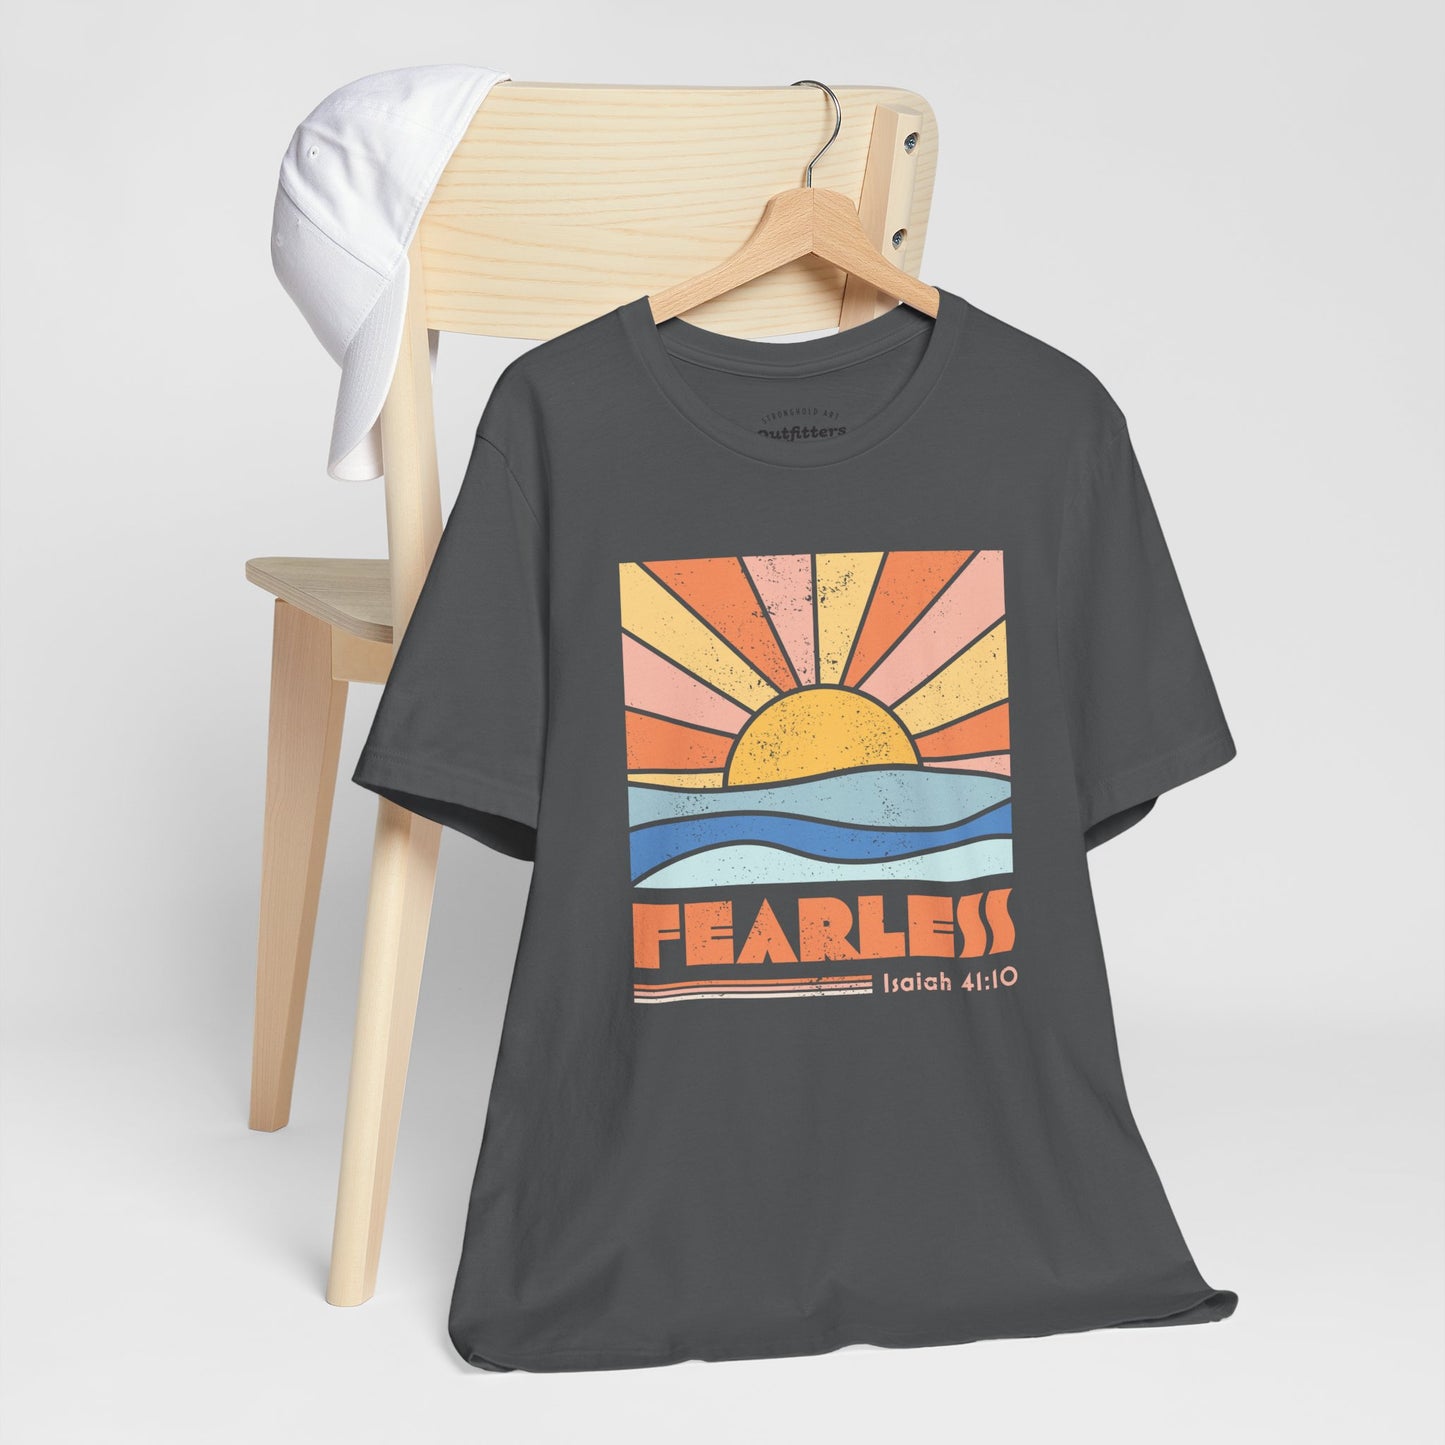 Fearless Isaiah 41:10 T-shirt